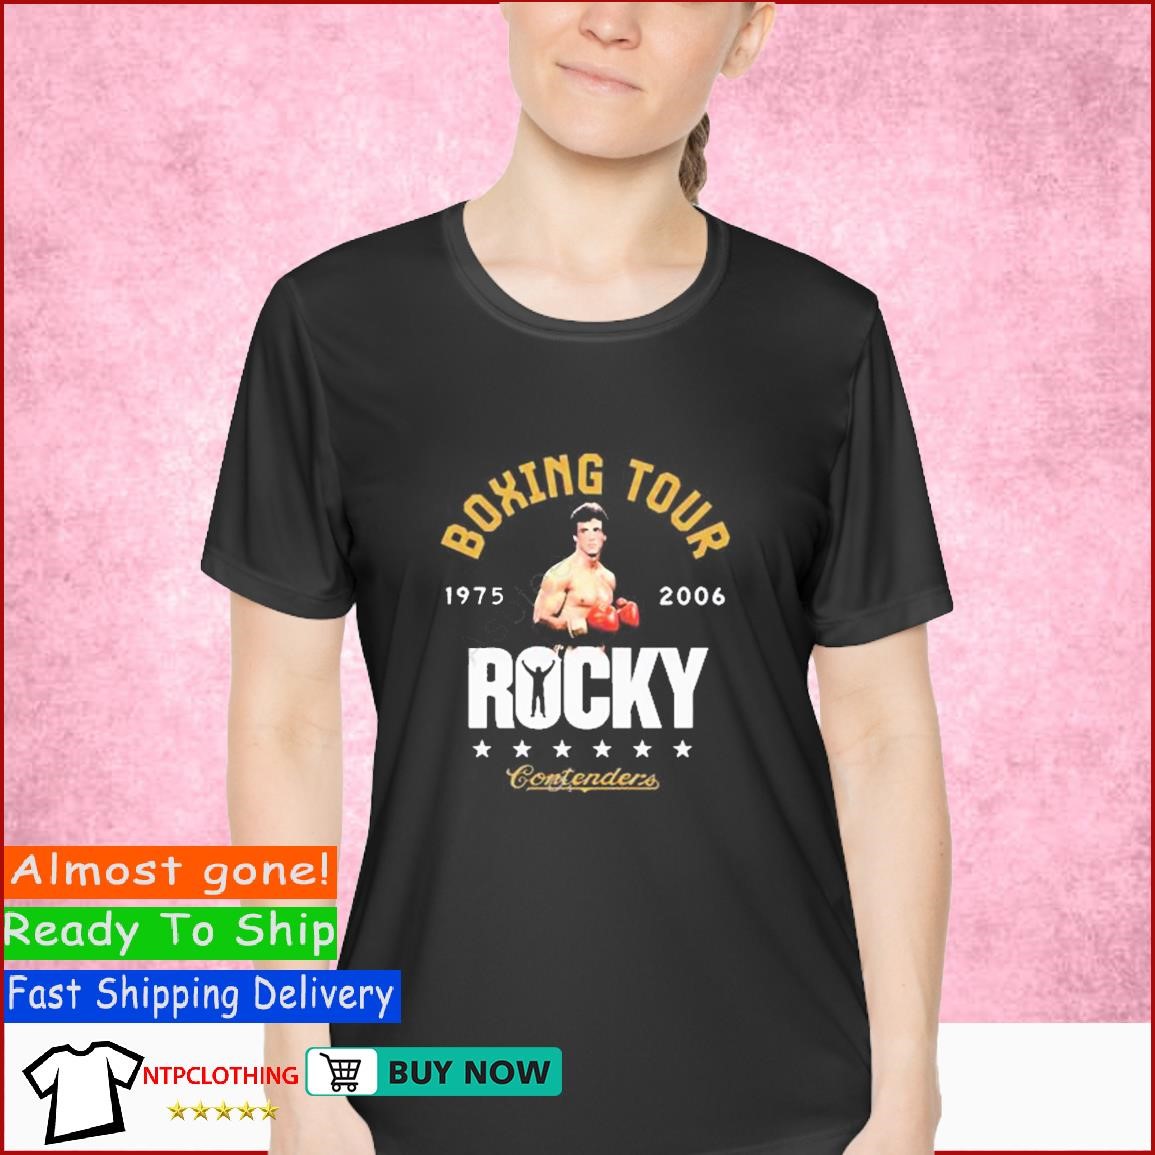 colorado rockies shirt amazon